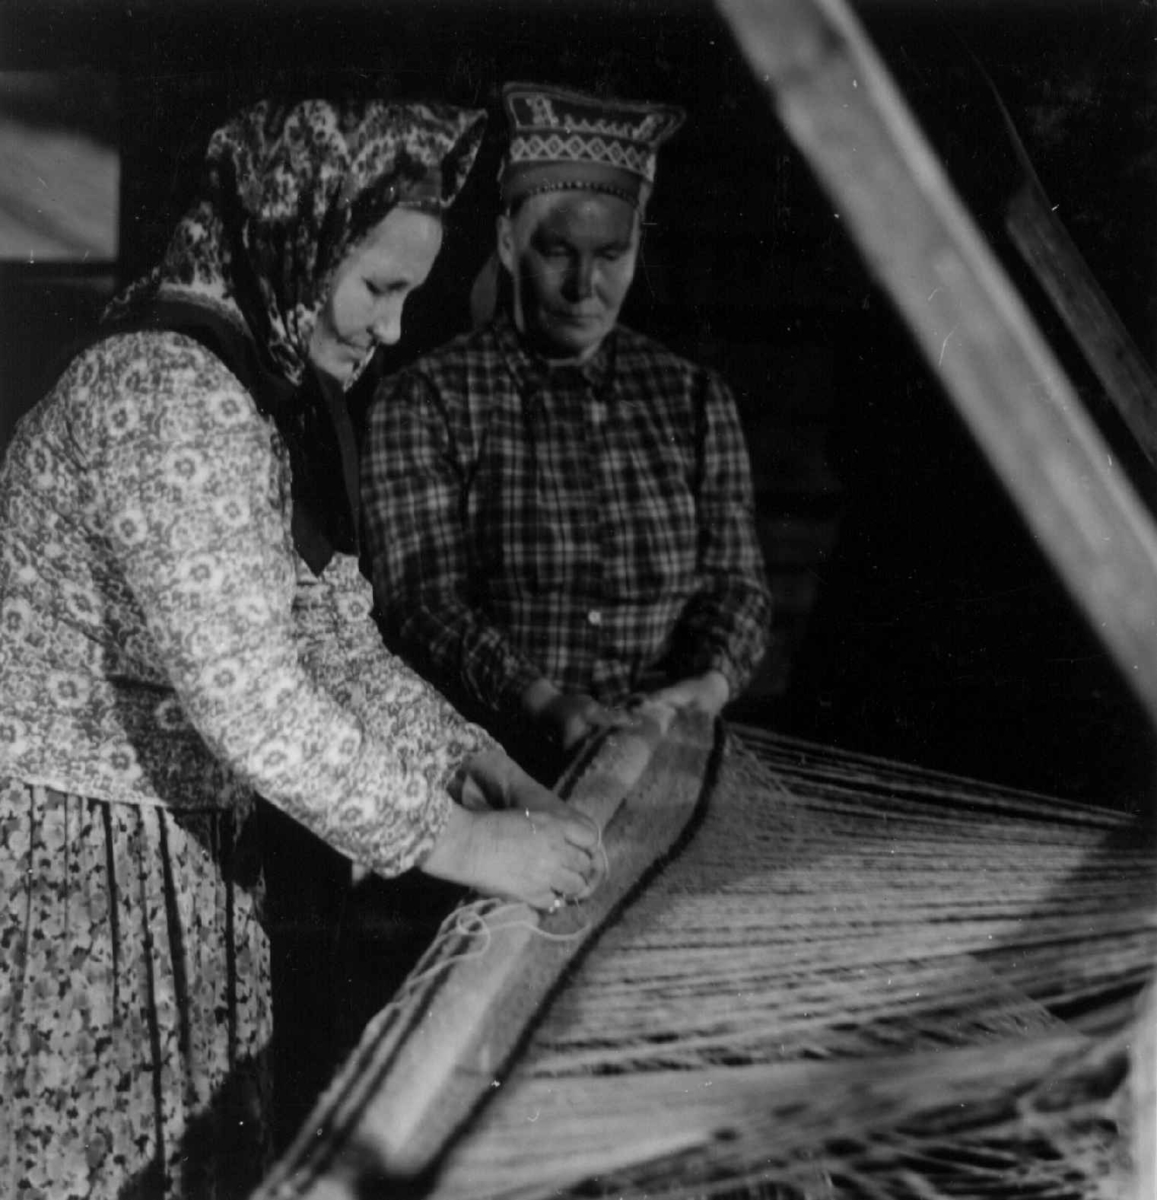 Greneveving. Skoltesamene Darja og Naska Moshnikov demonstrerer grenveveing på Föllisöen, Helsinki Universitet, Finland 1955. 26. Vevnaden vindes opp på bommen. 